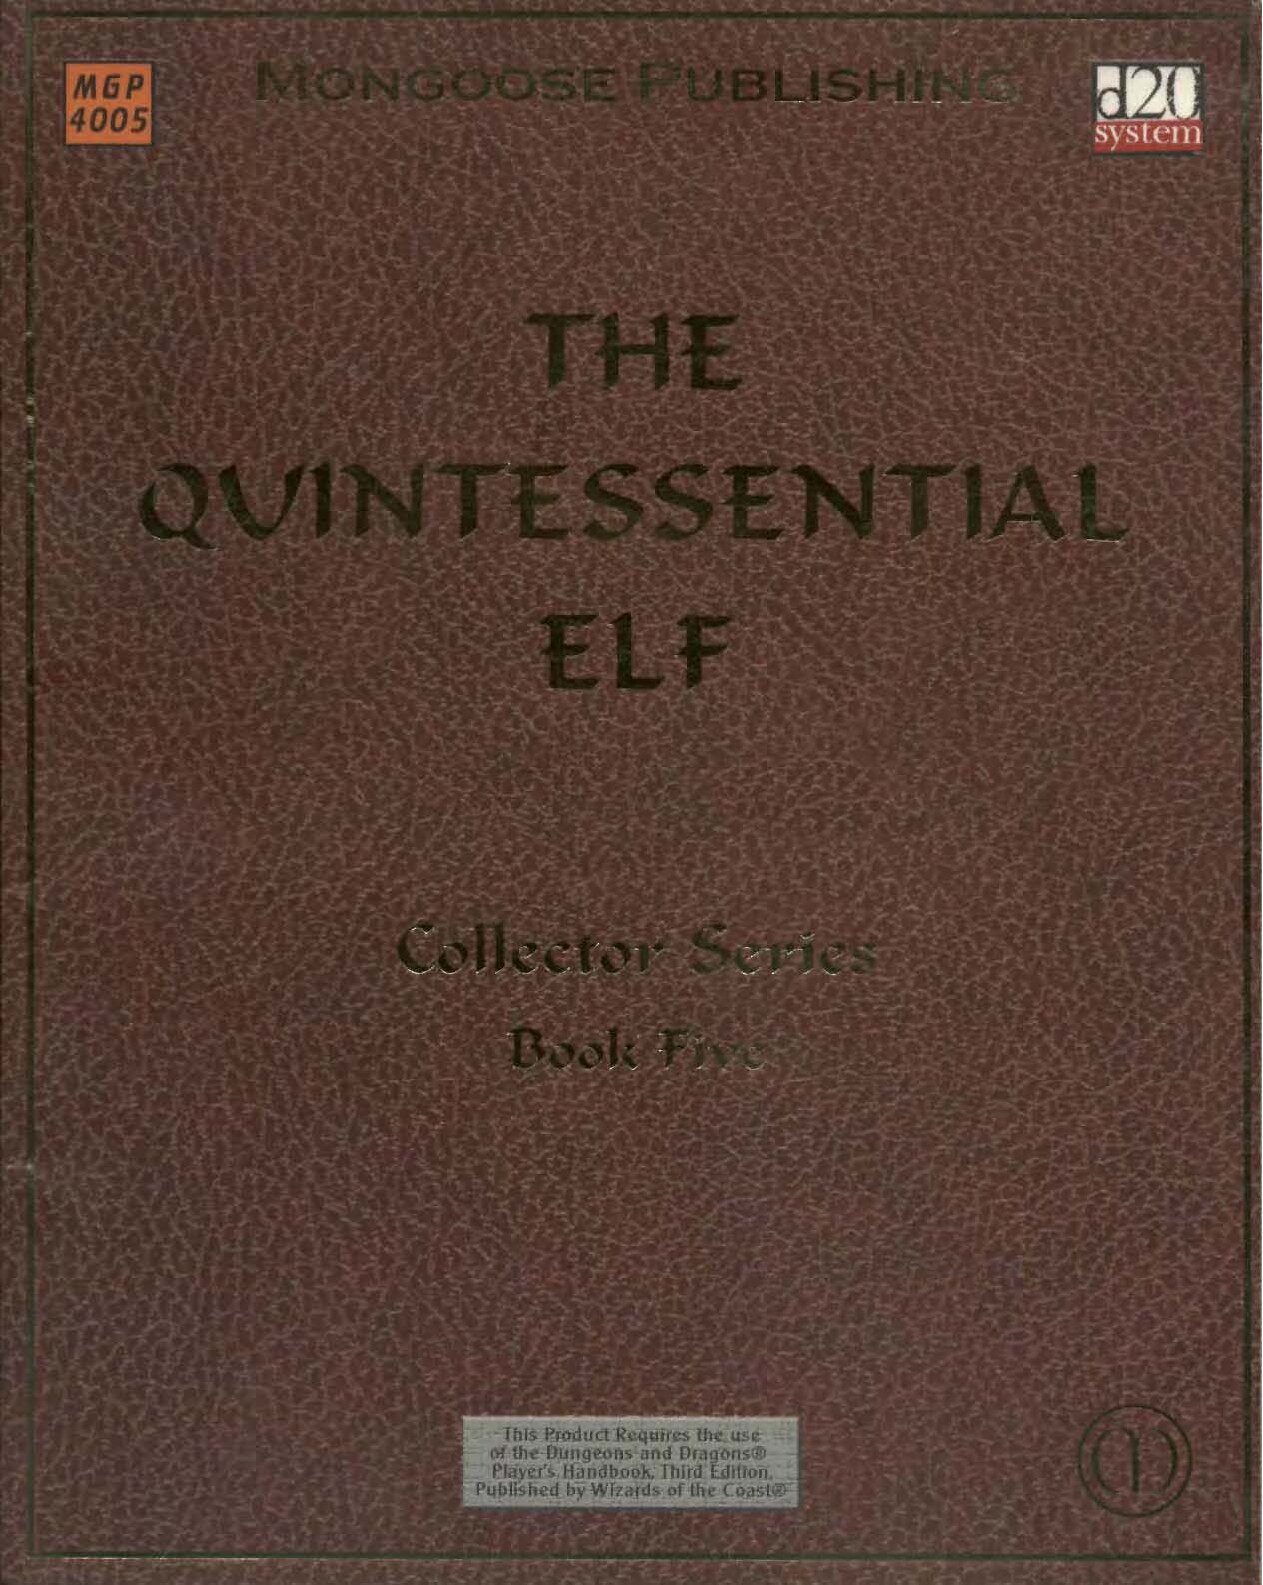 The Quintessential Elf